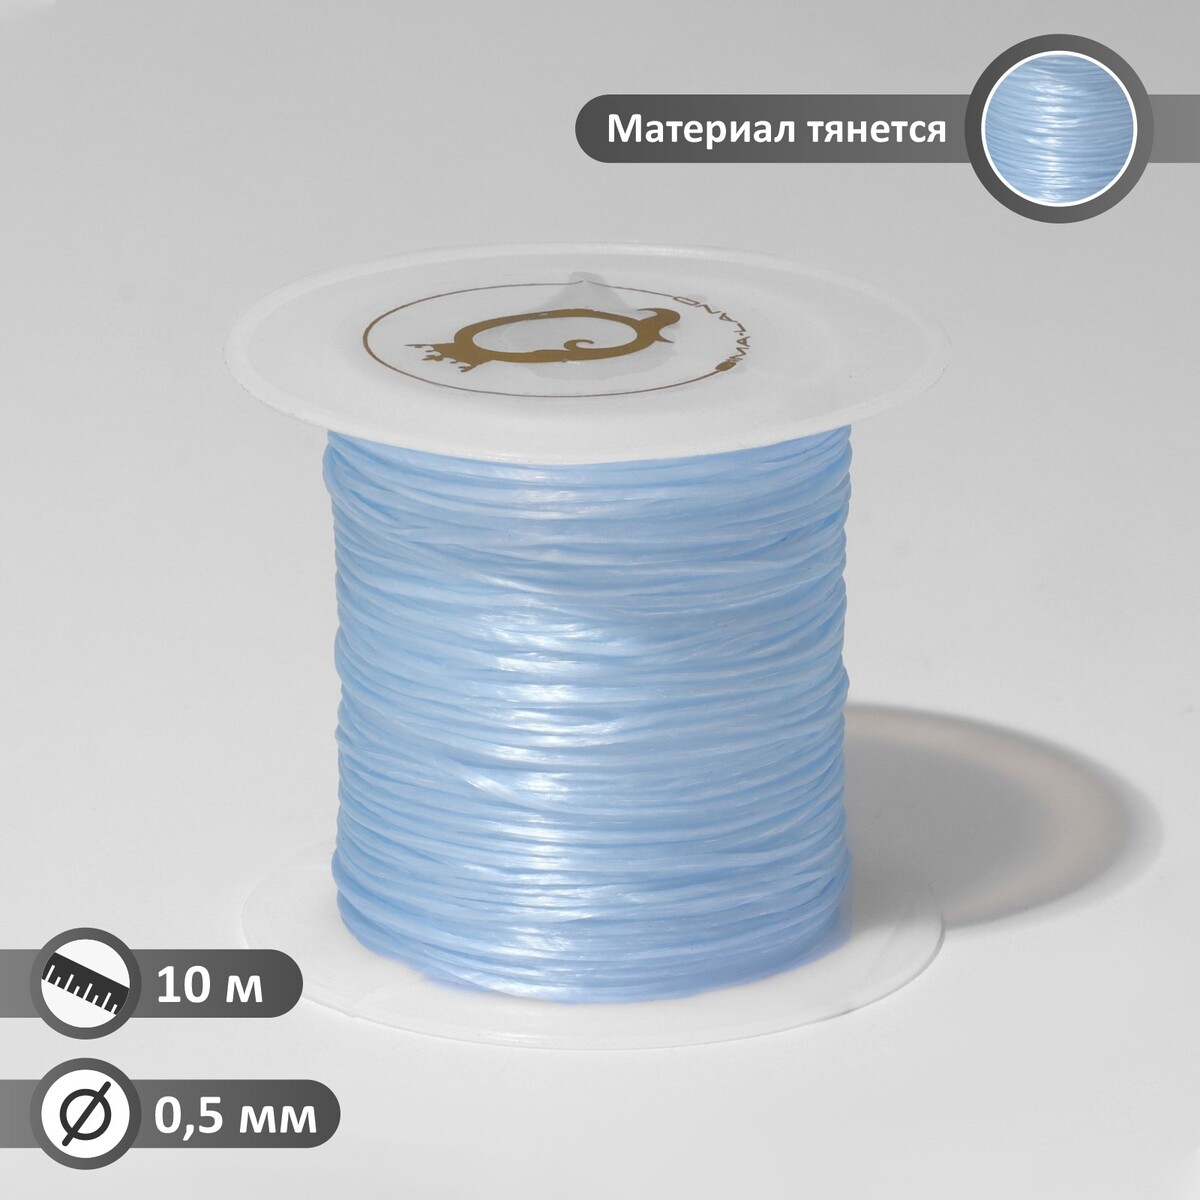 Нить силиконовая (резинка) d=0,5 мм, l=10 м (прочность 2250 денье), цвет голубой нить силиконовая резинка d 0 5мм l 400м прочность 2500 денье